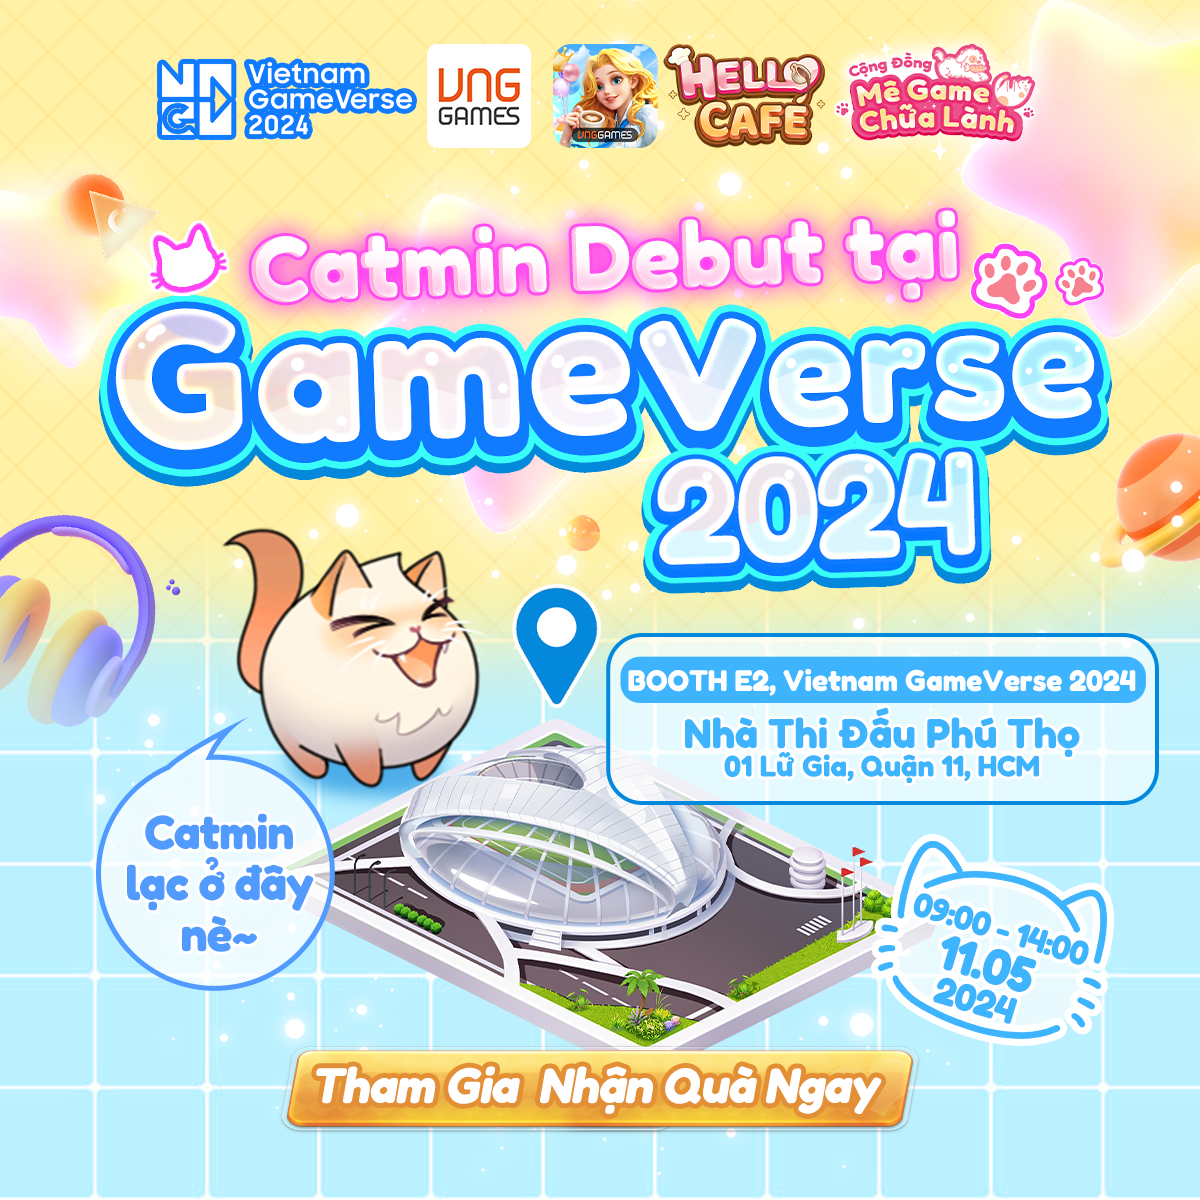 Hello Café đồng hành cùng Vietnam Gameverse 2024 - ảnh 2